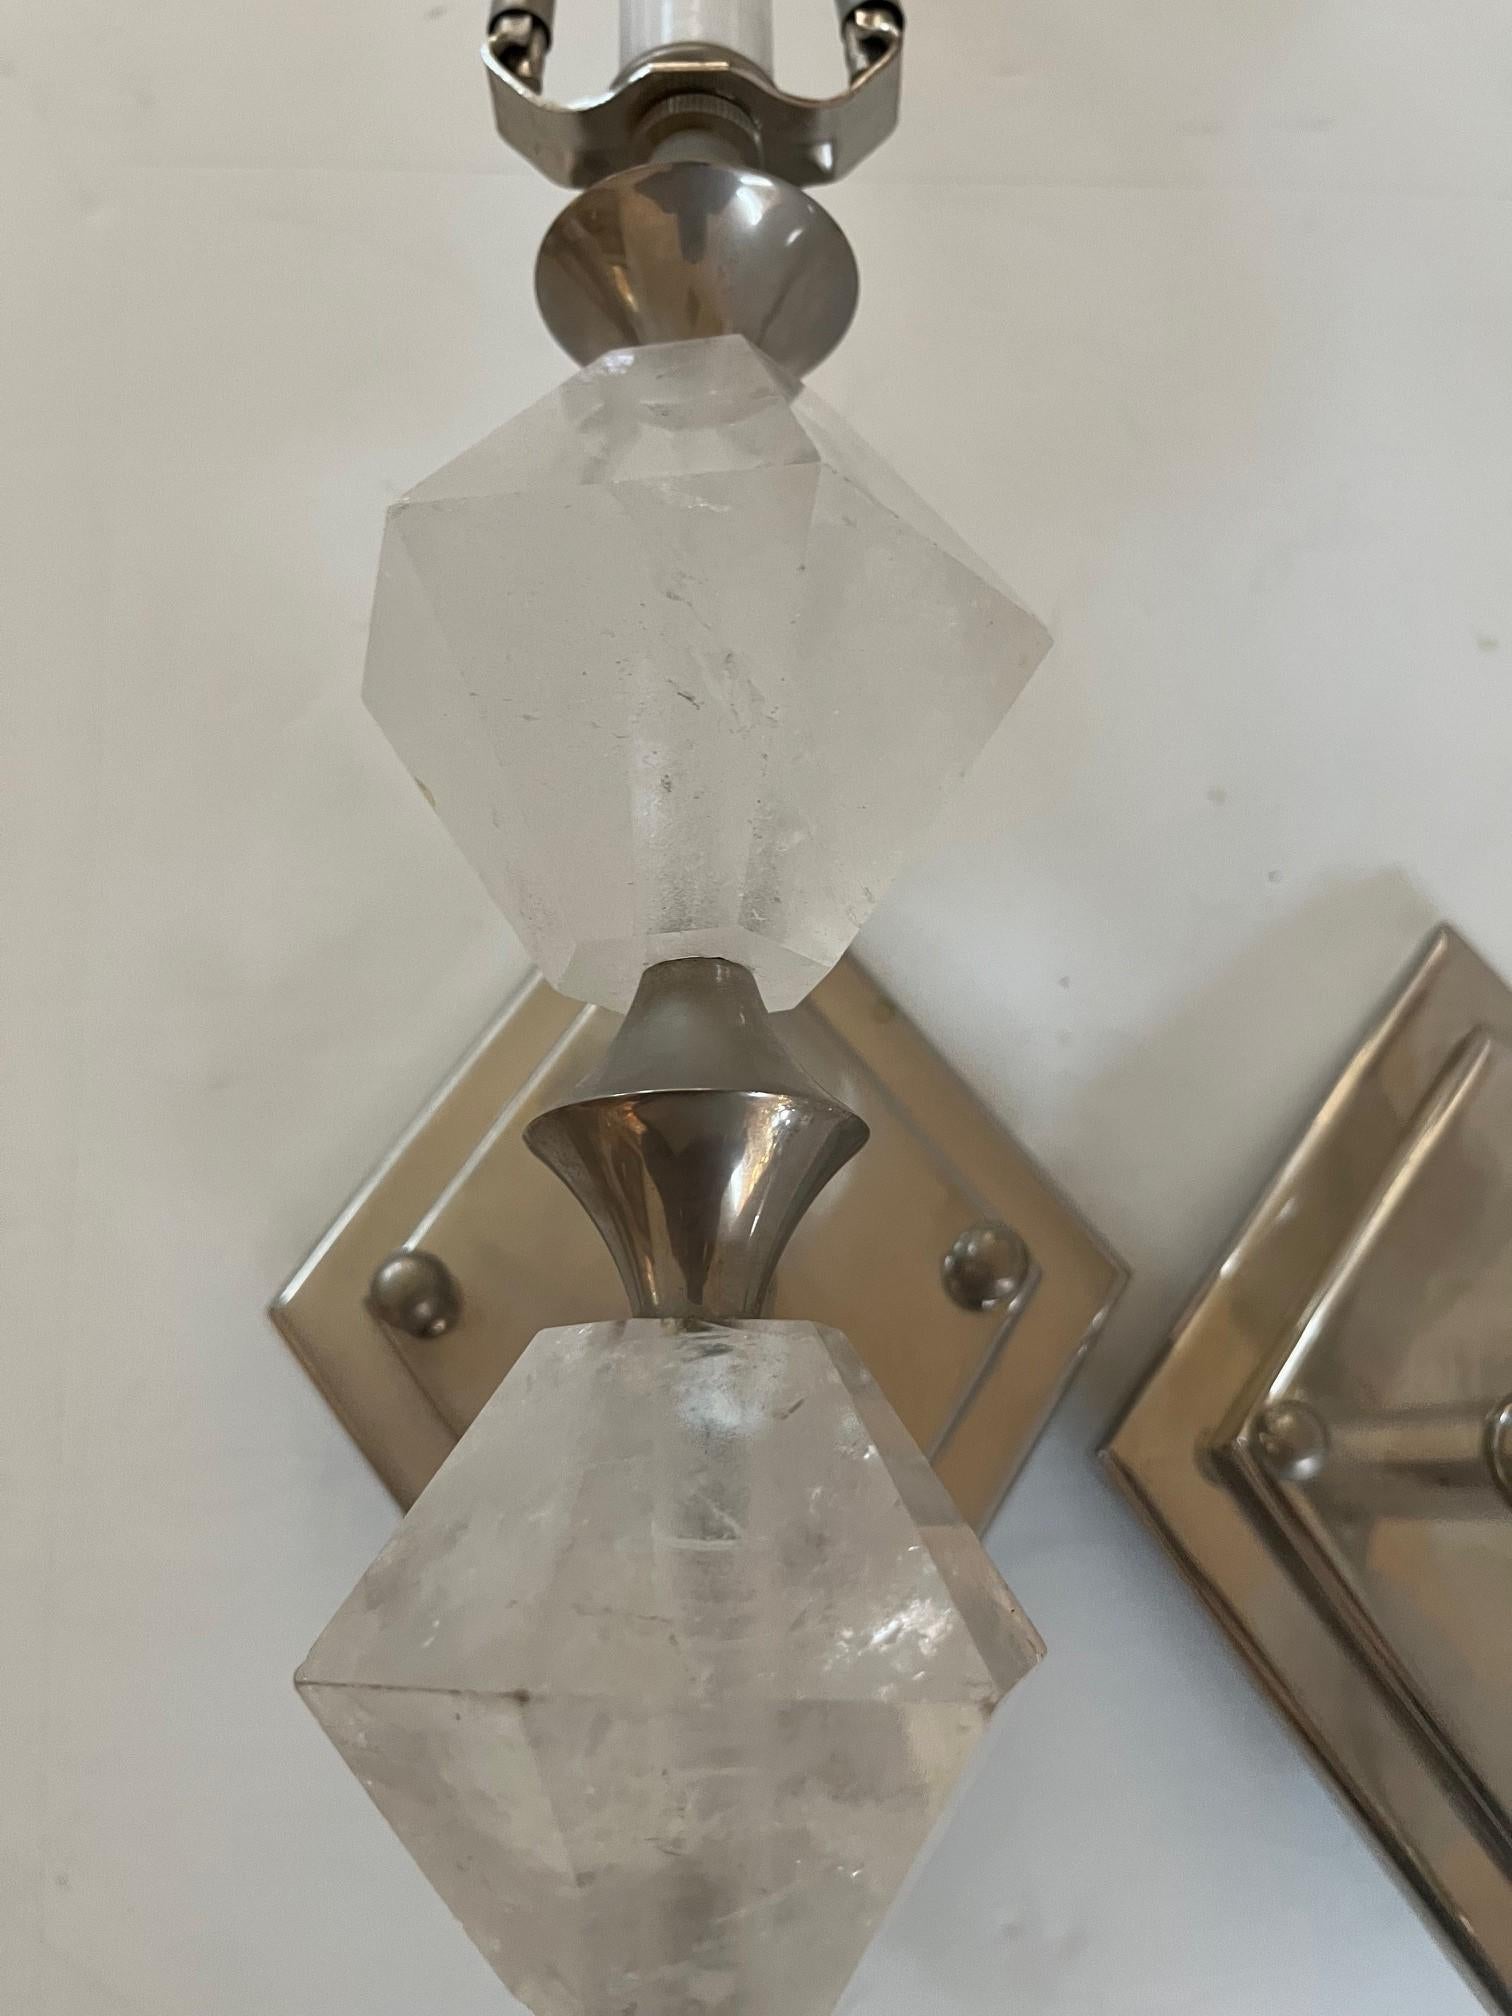 Paar Art Deco Modern Rock Crystal Sconces Designed by Interior Designer in Los Angeles, Custom Made in Diamond Shape Design mit einem Doppel-Diamant zurück Platte in hochglanzpoliert Nickle Finish, Bergkristall aus Brasilien importiert, Sconces